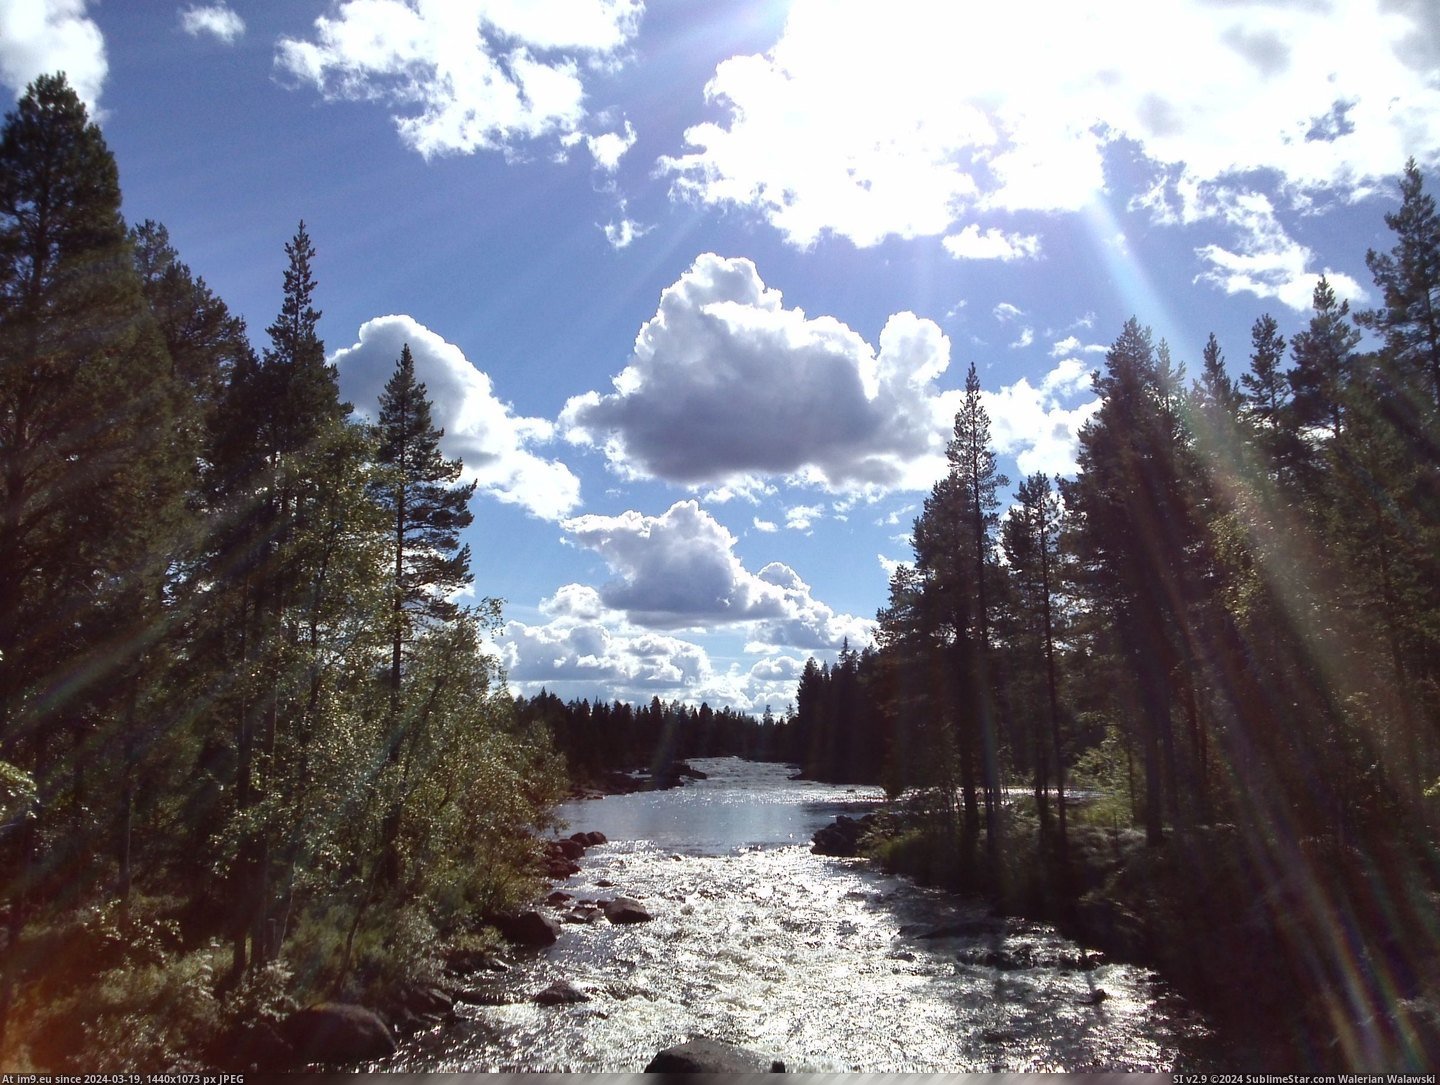 #Summer #Sweden #Northern [Earthporn] Northern Sweden during Summer [2448 x 1836] Pic. (Bild von album My r/EARTHPORN favs))